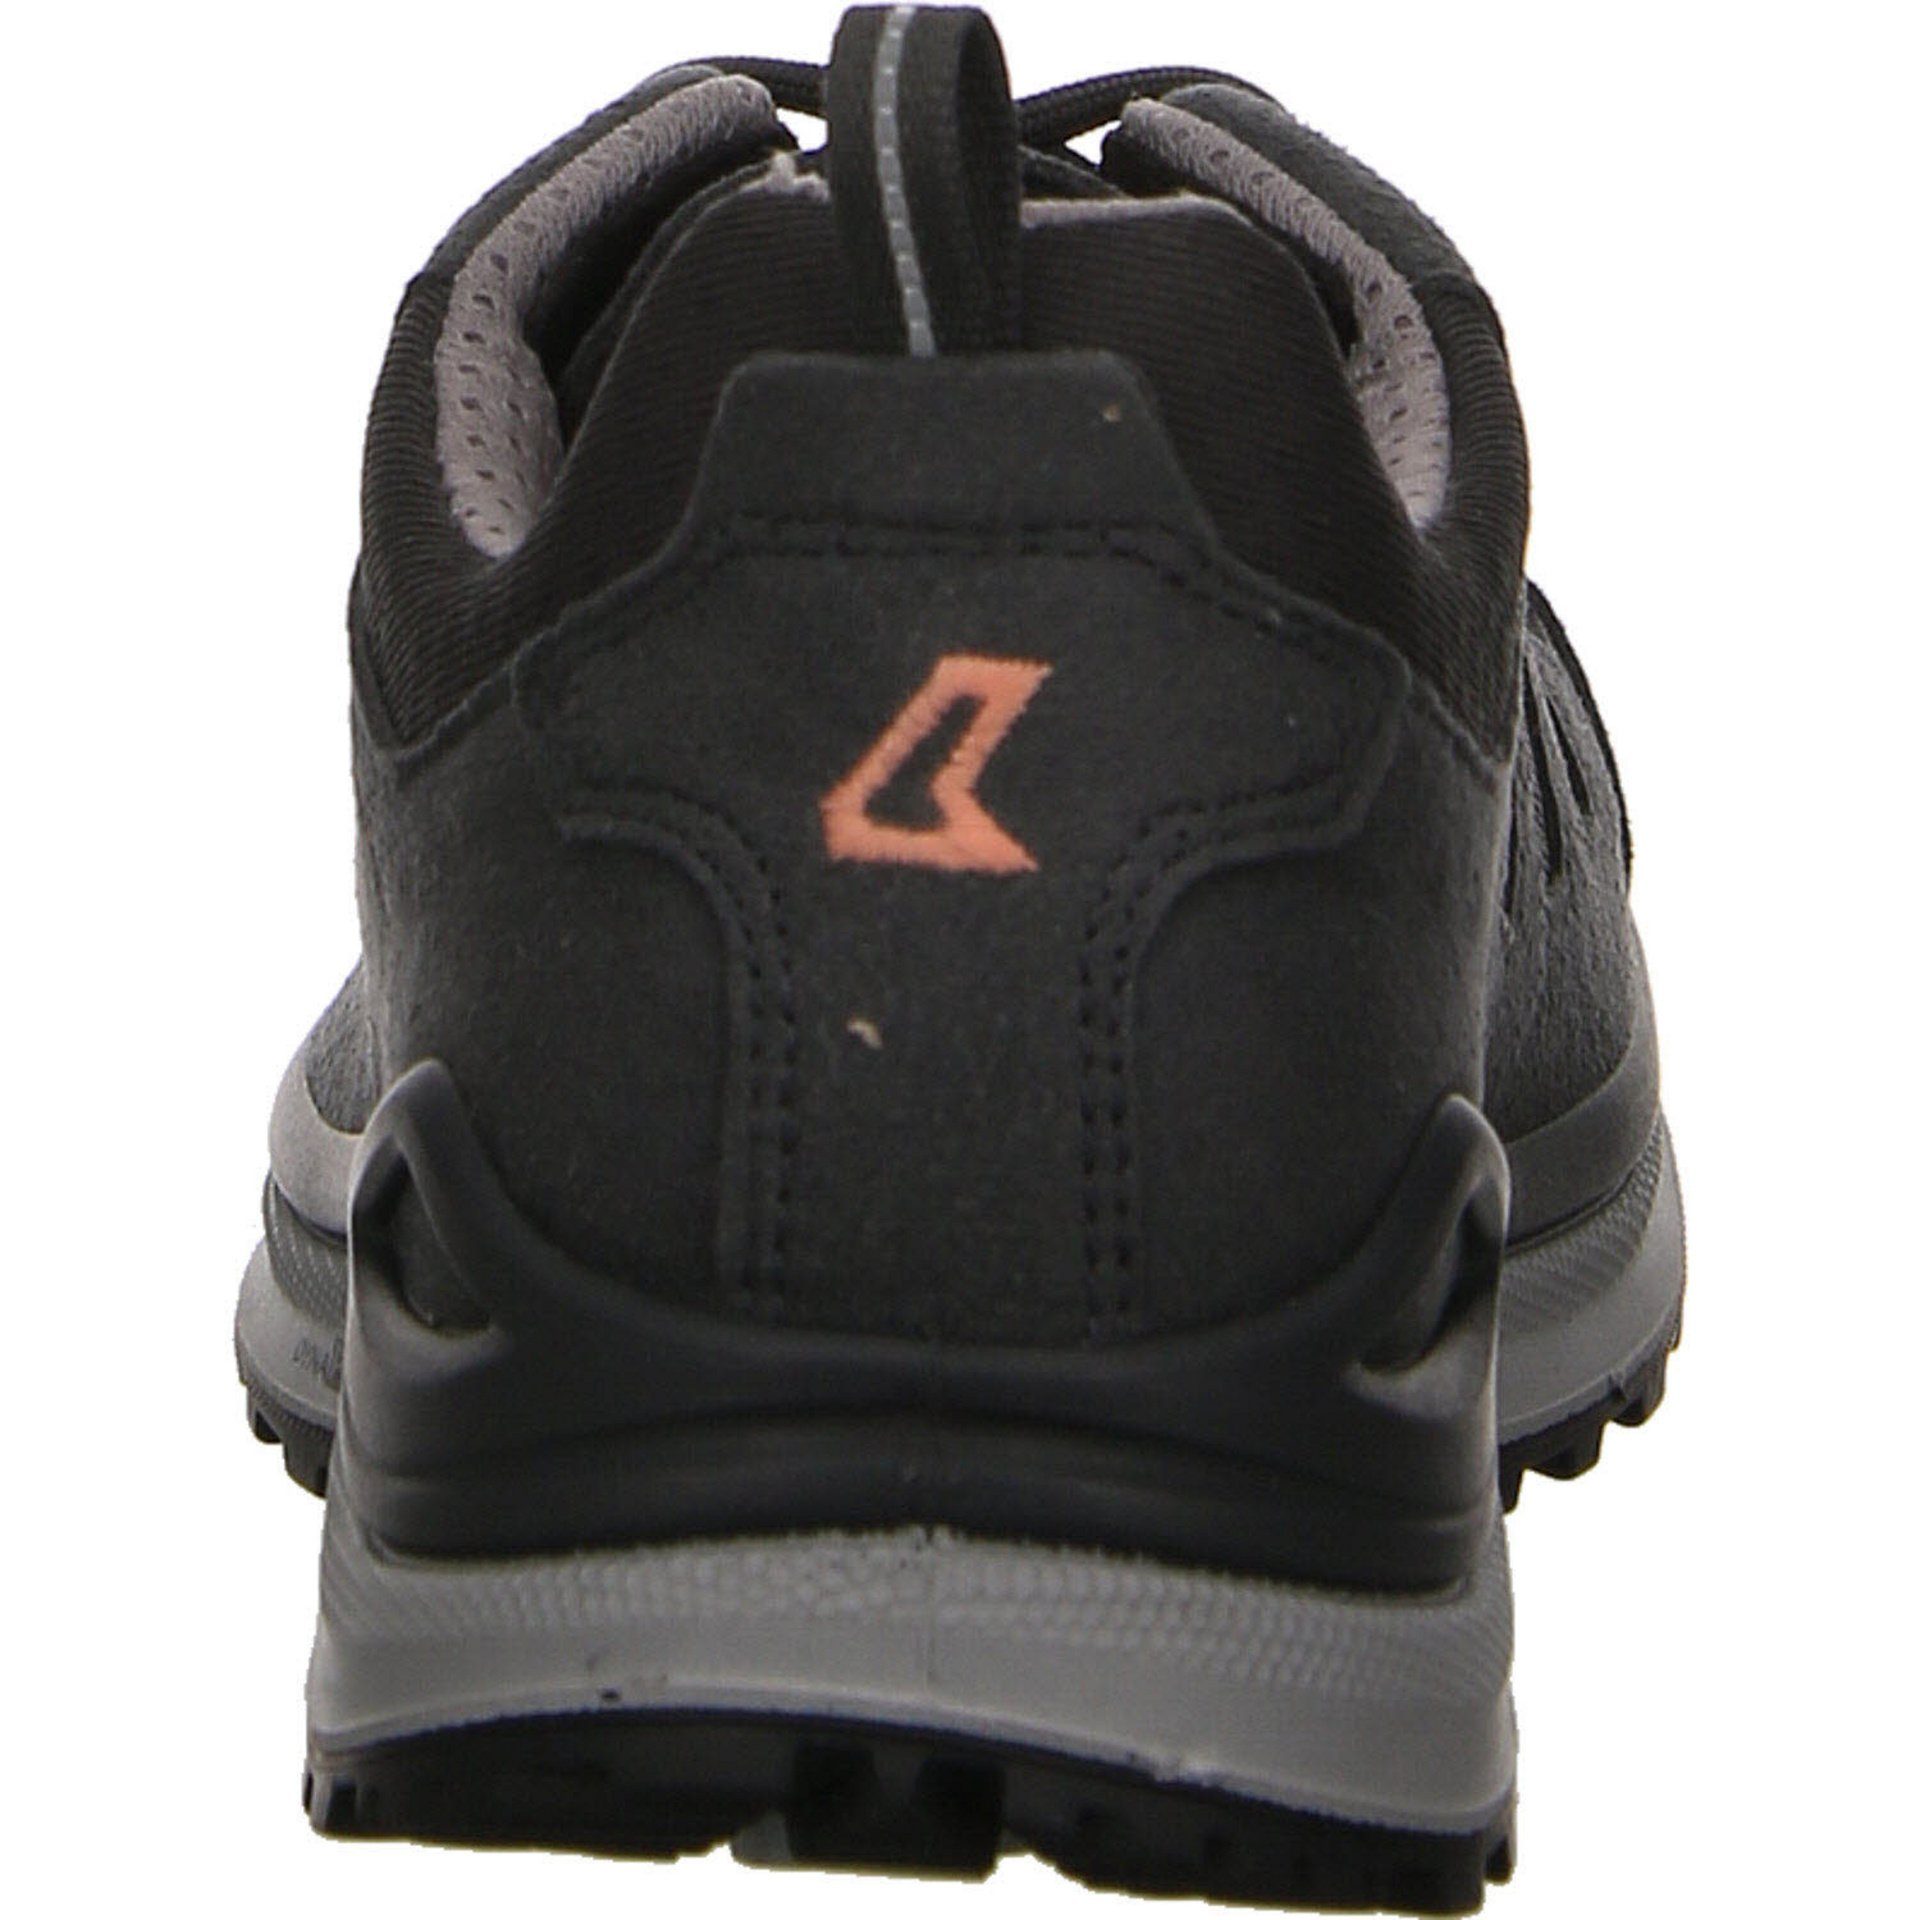 Lowa Damen Schuhe asphalt/lachs Leder-/Textilkombination Outdoorschuh Evo Innox Outdoorschuh GTX Lo Outdoor